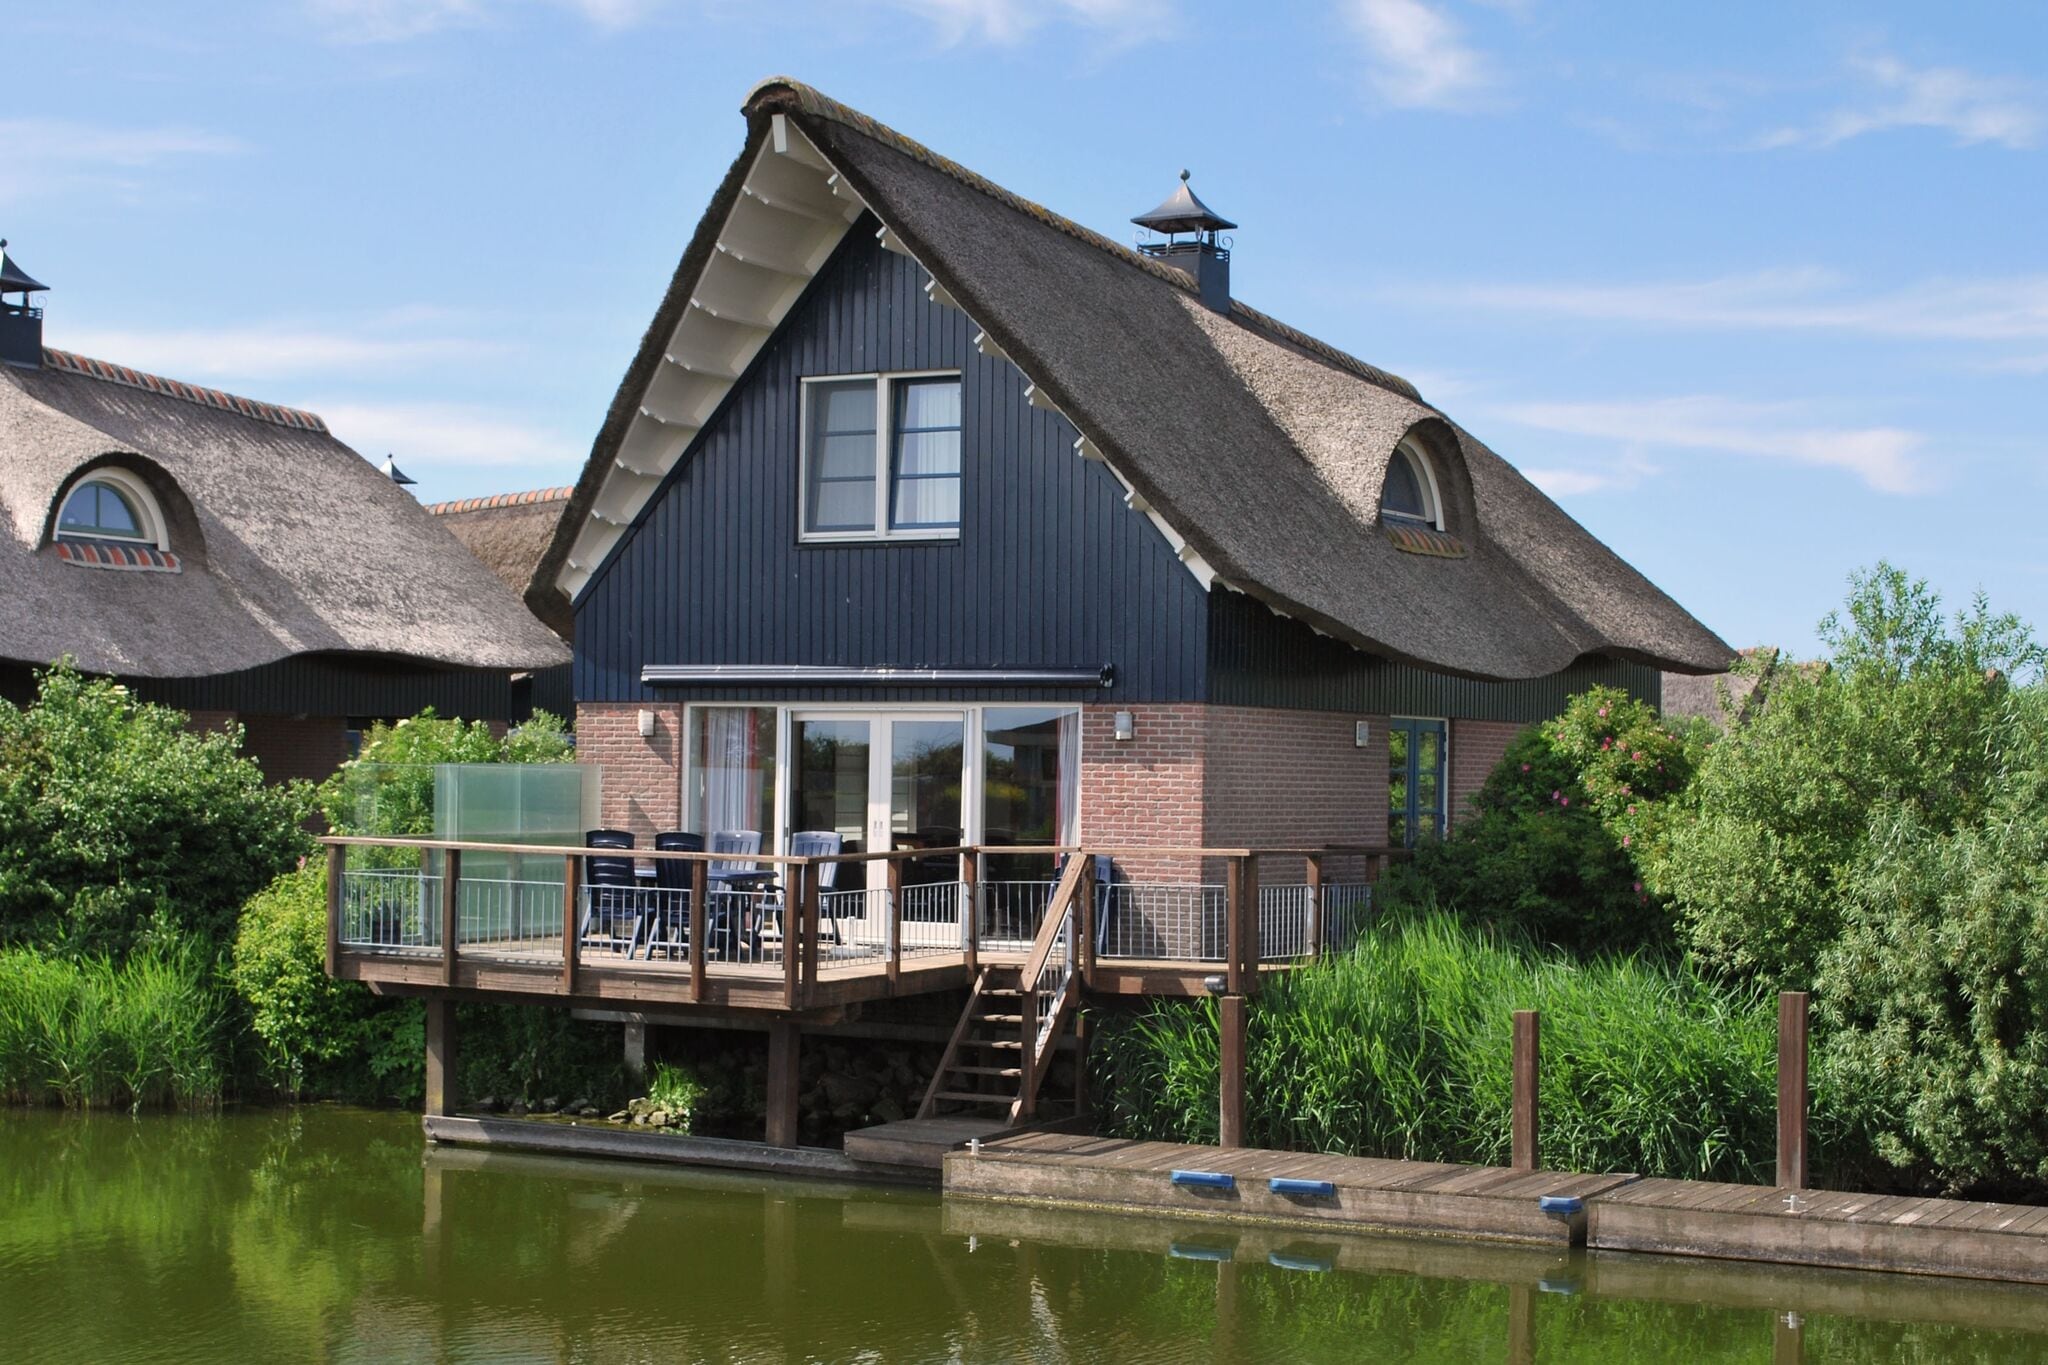 Villa mit Terrasse am Wasser in Friesland